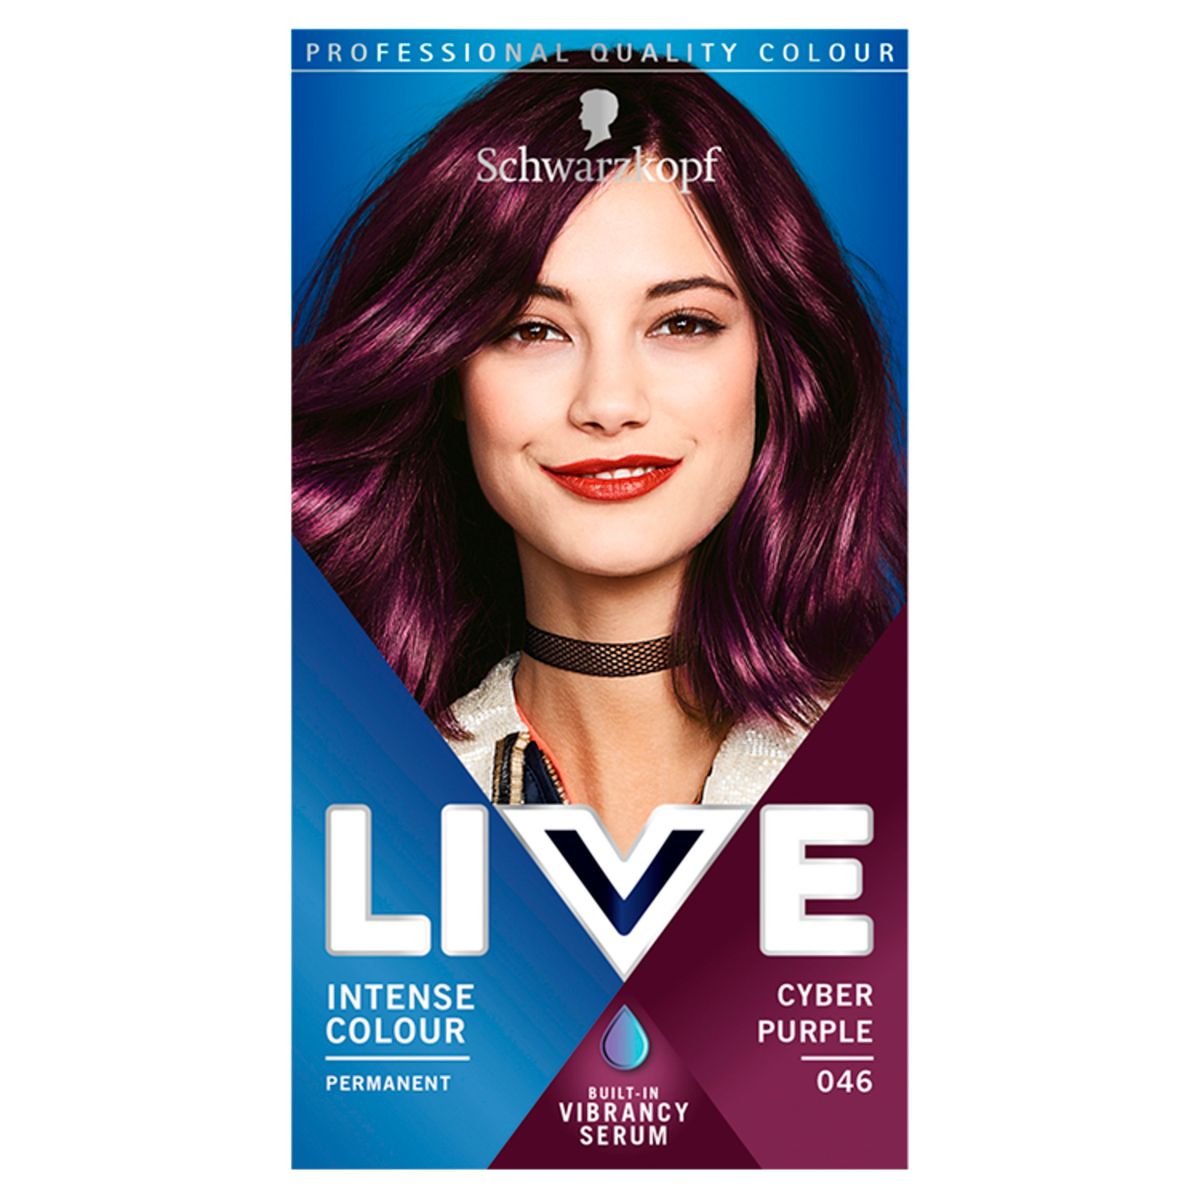 Schwarzkopf LIVE Intense Colour, Permanent Purple Hair Dye-Cyber Purple ...